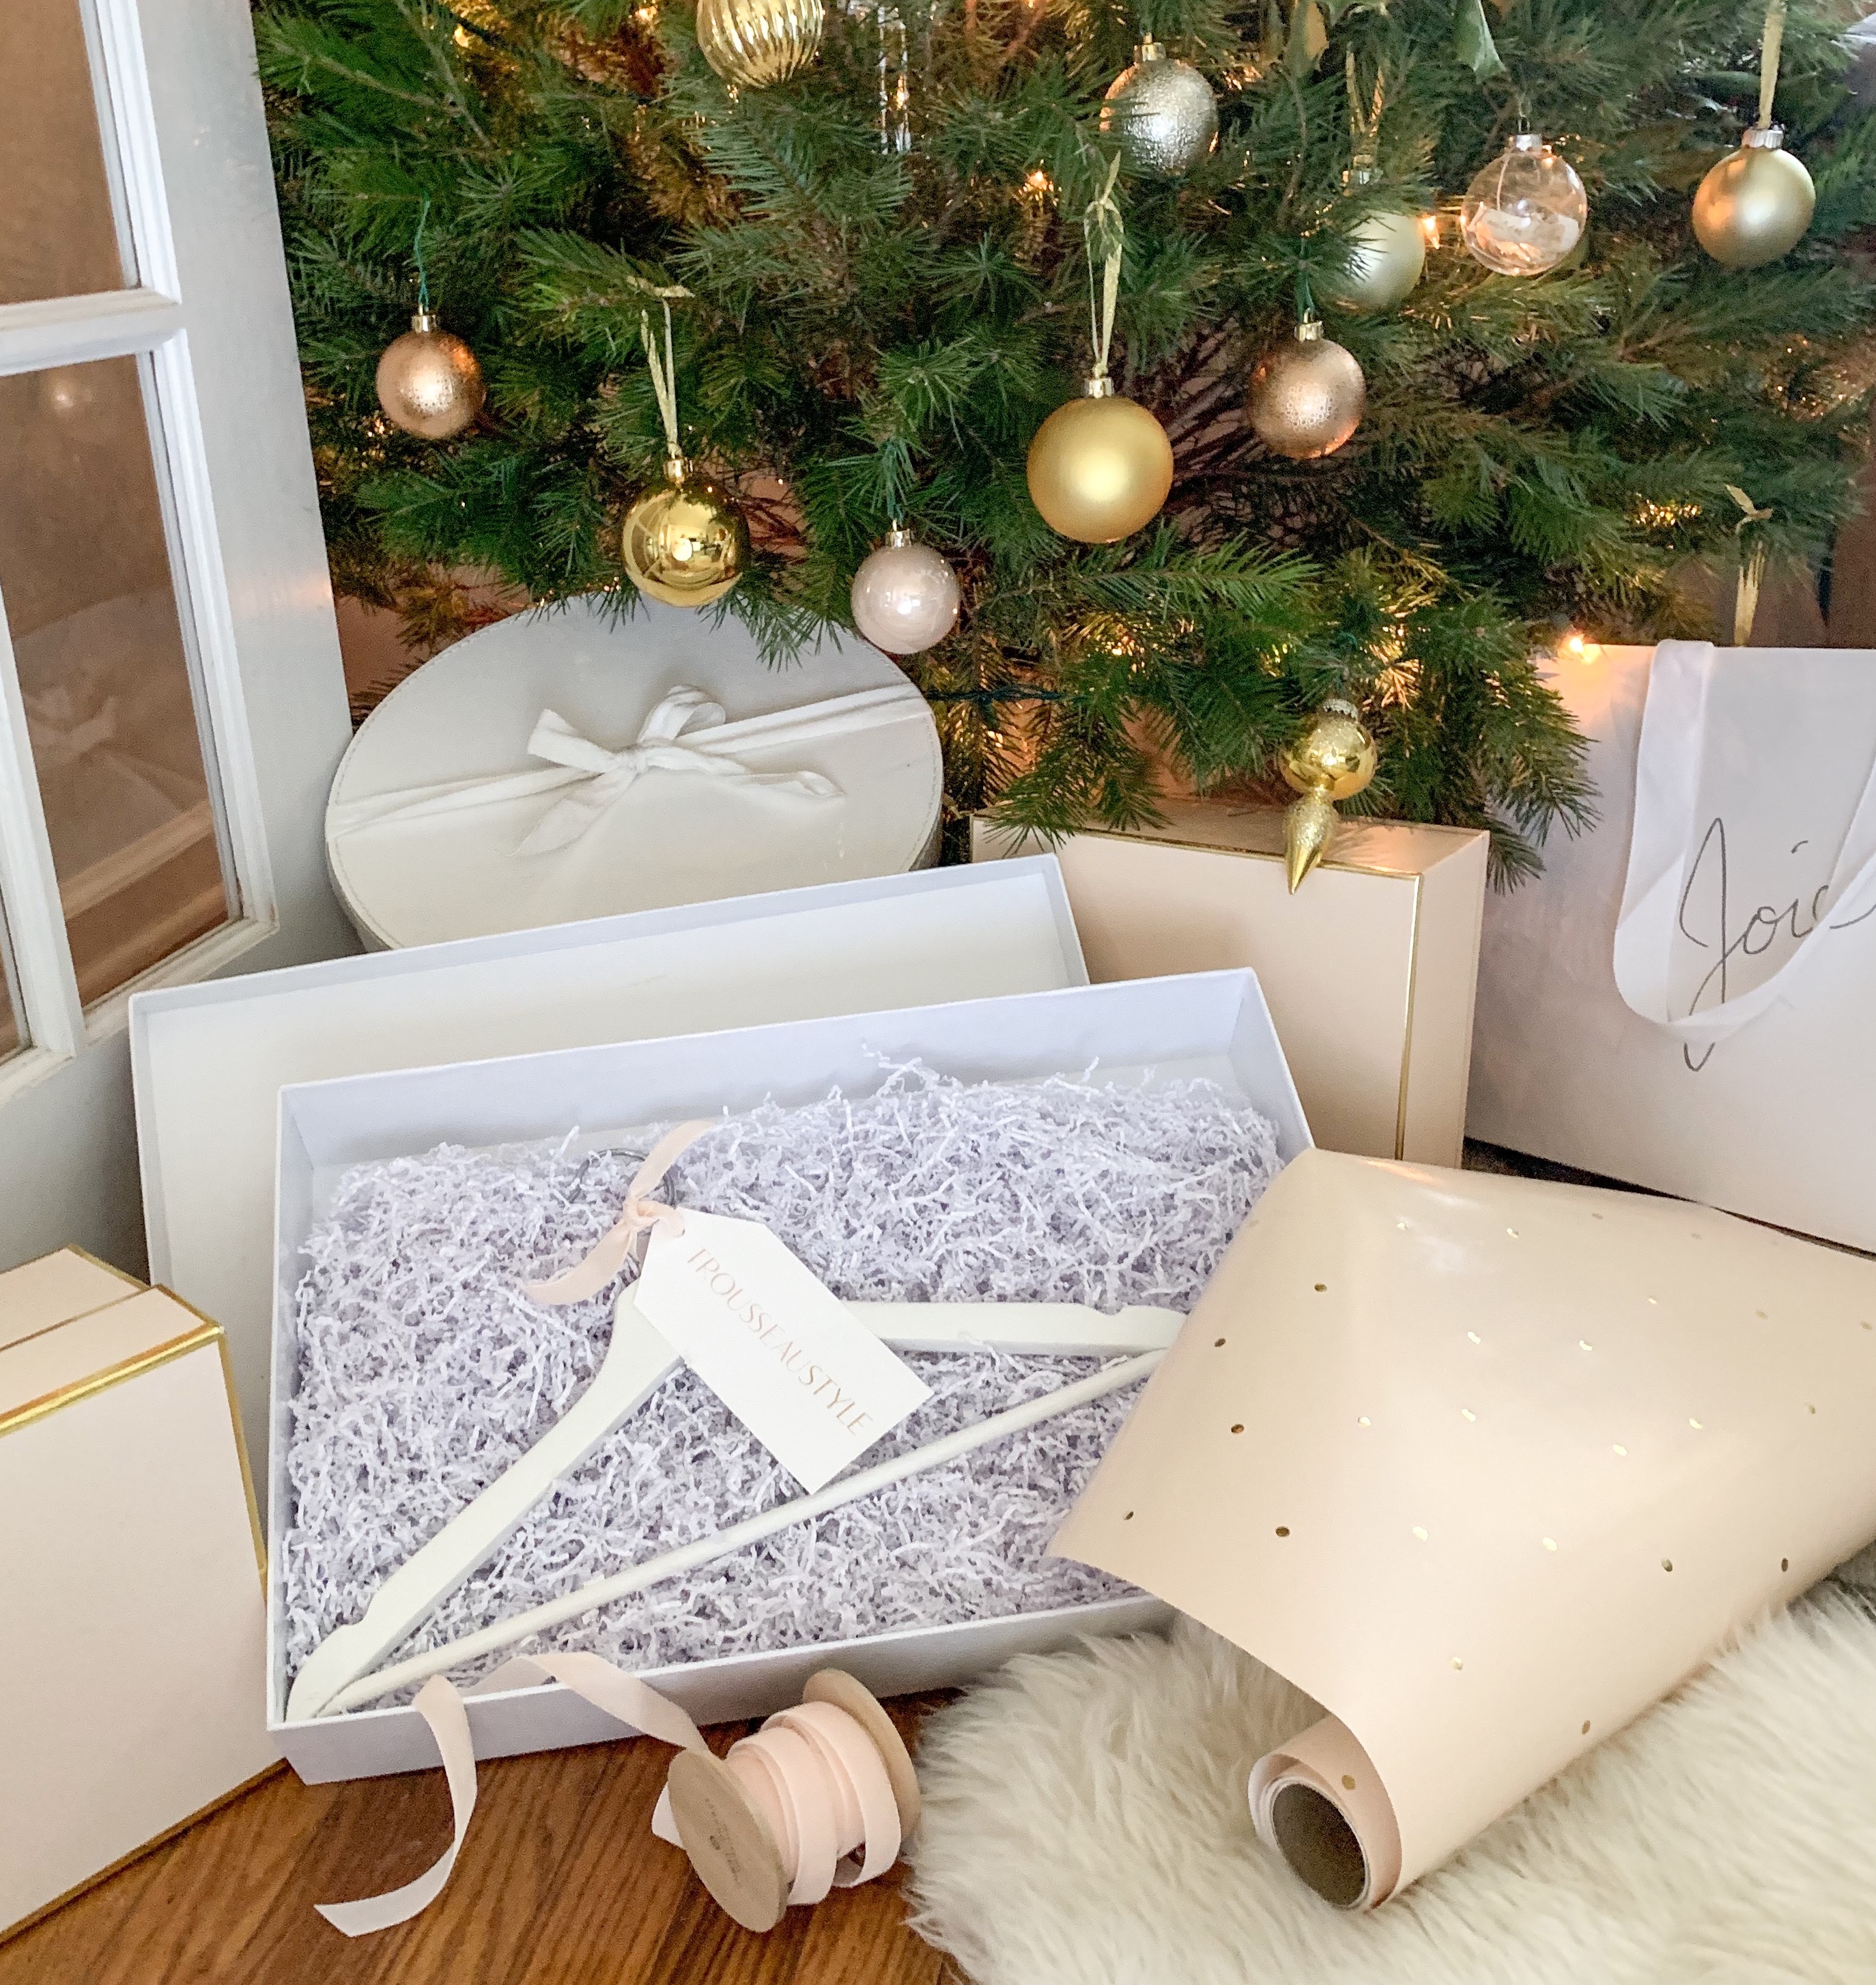 Trousseau Style Gift Box